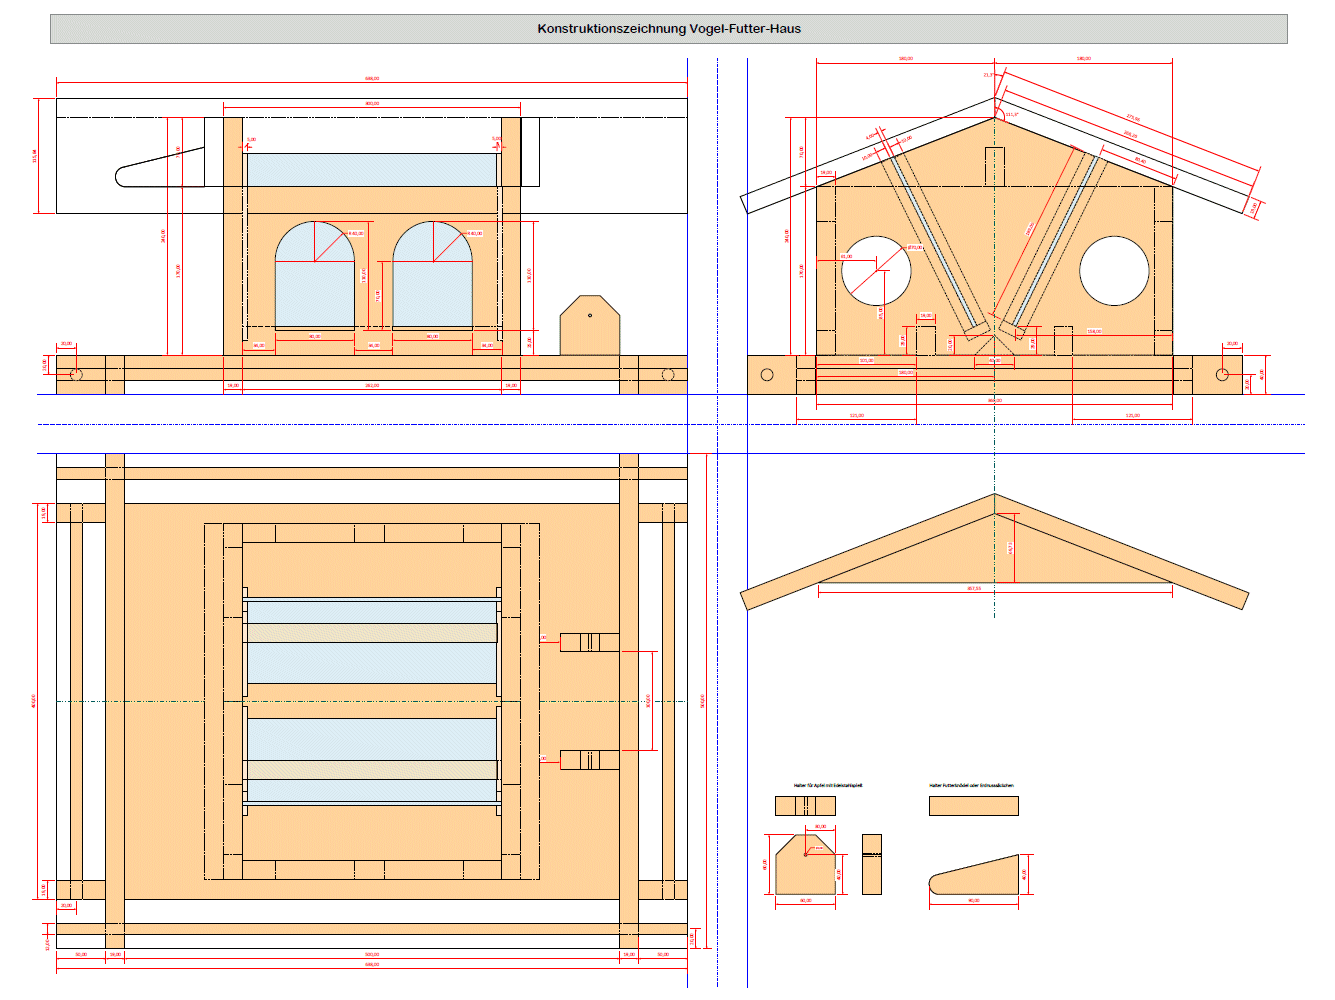 Vogelfutterhaus Konstruktion in 3-Tafel-Projektion